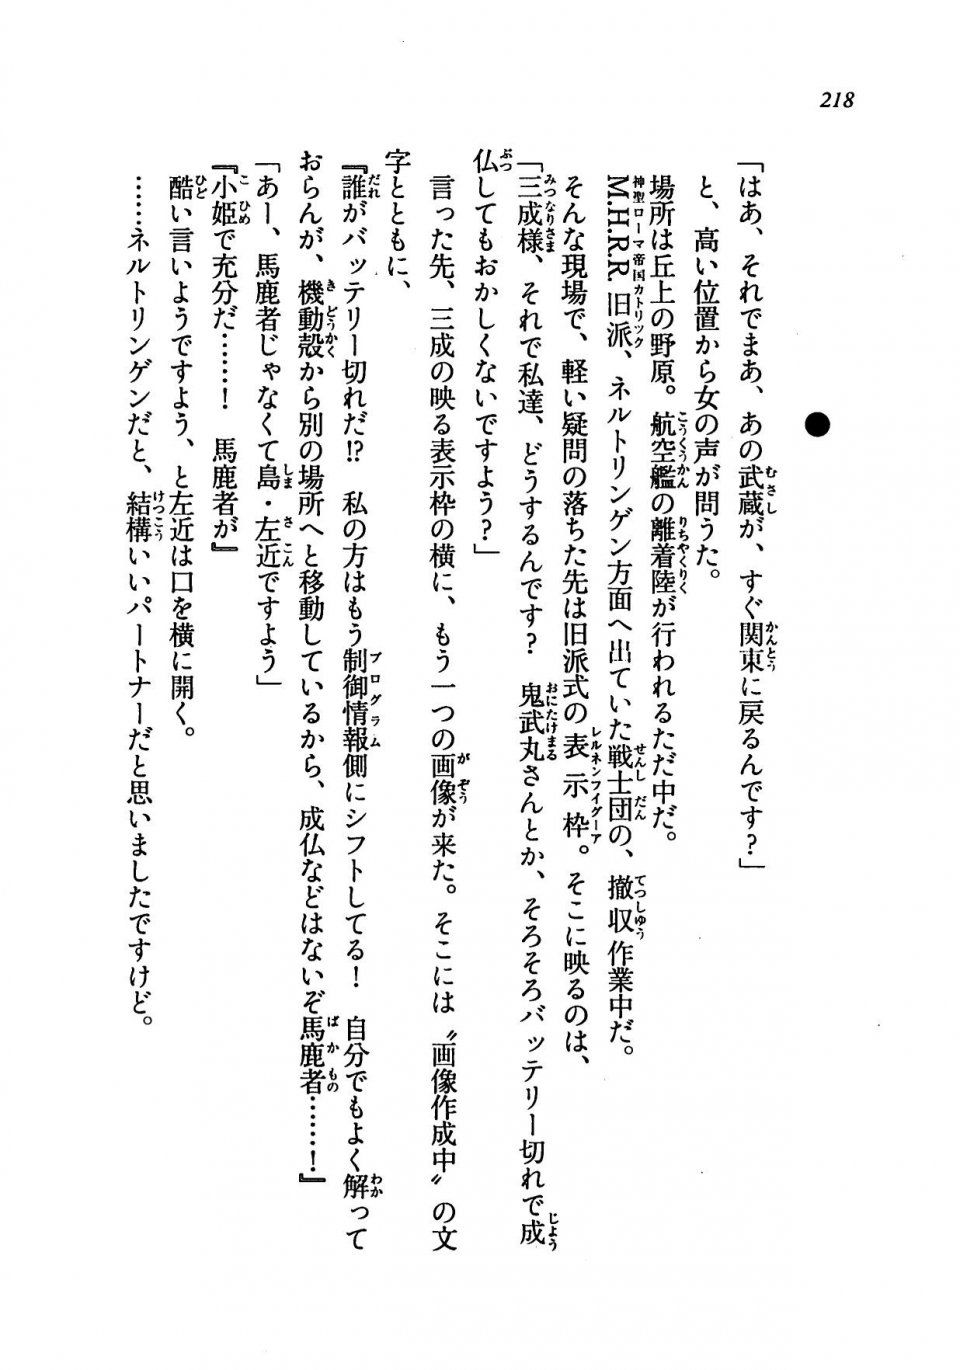 Kyoukai Senjou no Horizon LN Vol 19(8A) - Photo #218